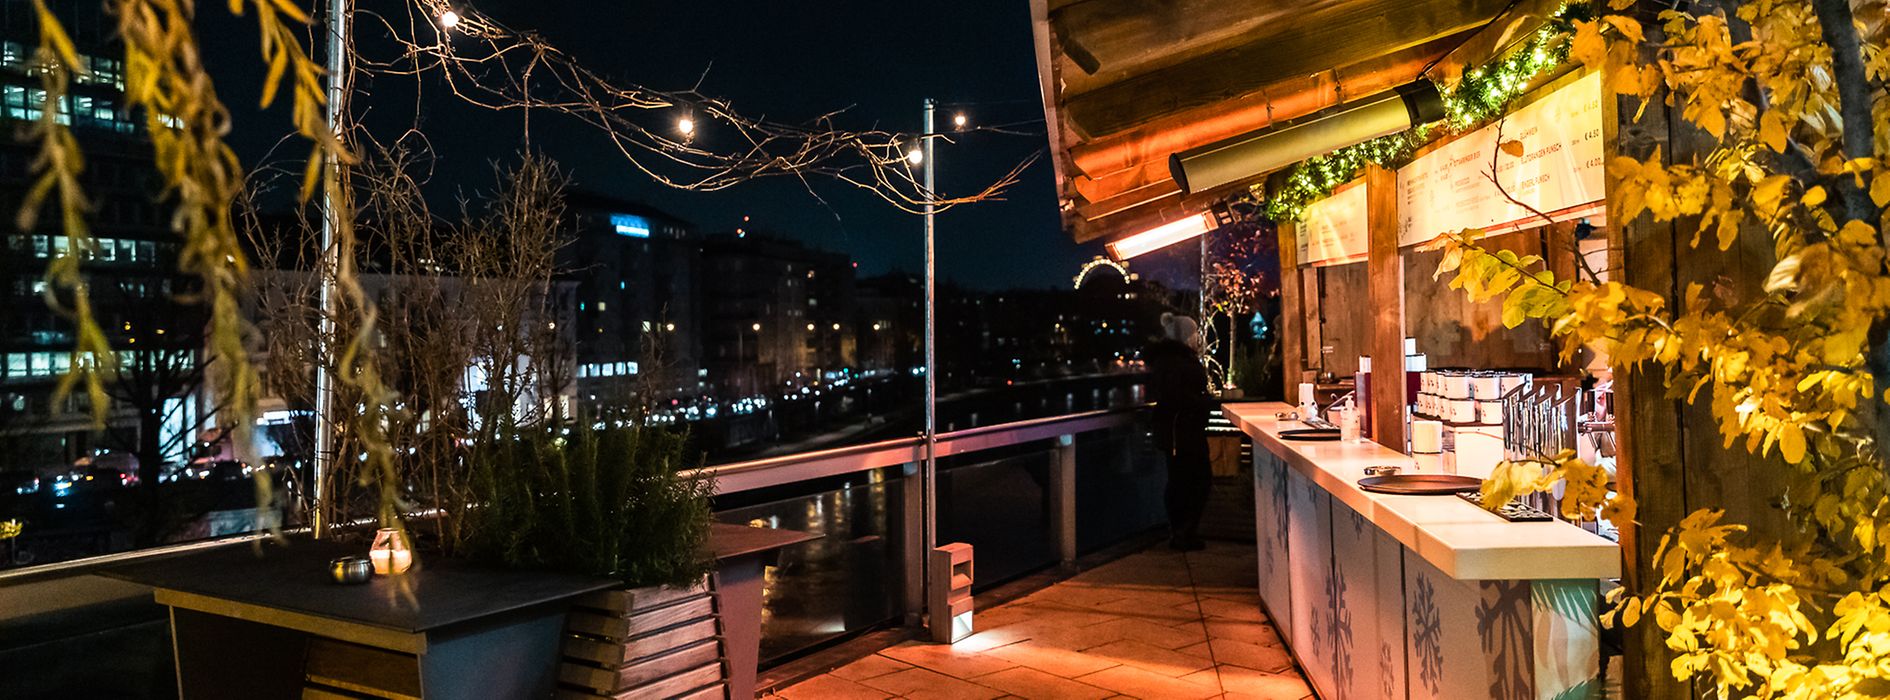 Personnes buvant du punch sur une terrasse avec vue sur le Canal du Danube